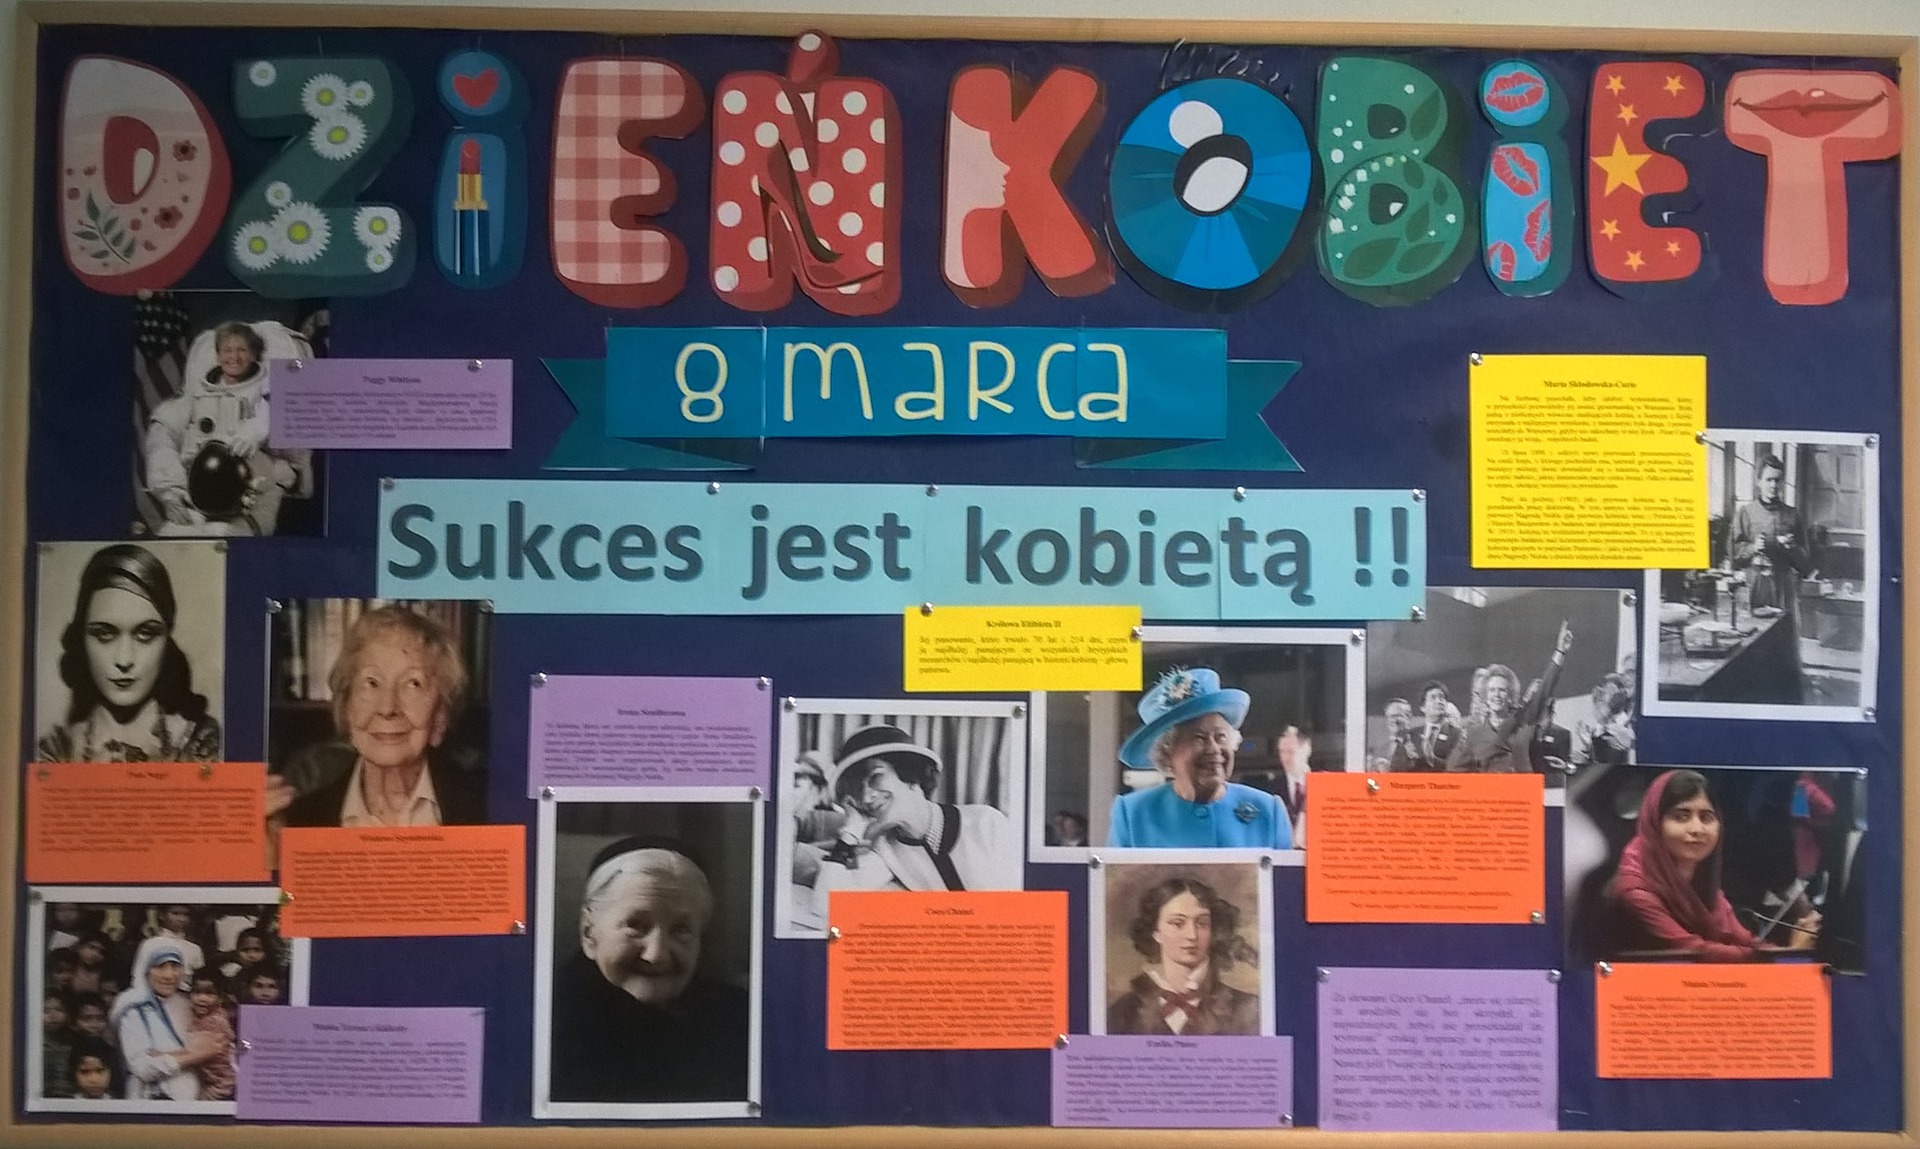 Gazetka szkolna z okazji Dnia Kobiet, na niej napis "Sukces jest kobietą!" oraz wizerunki sławnych kobiet z opisem ich dokonań